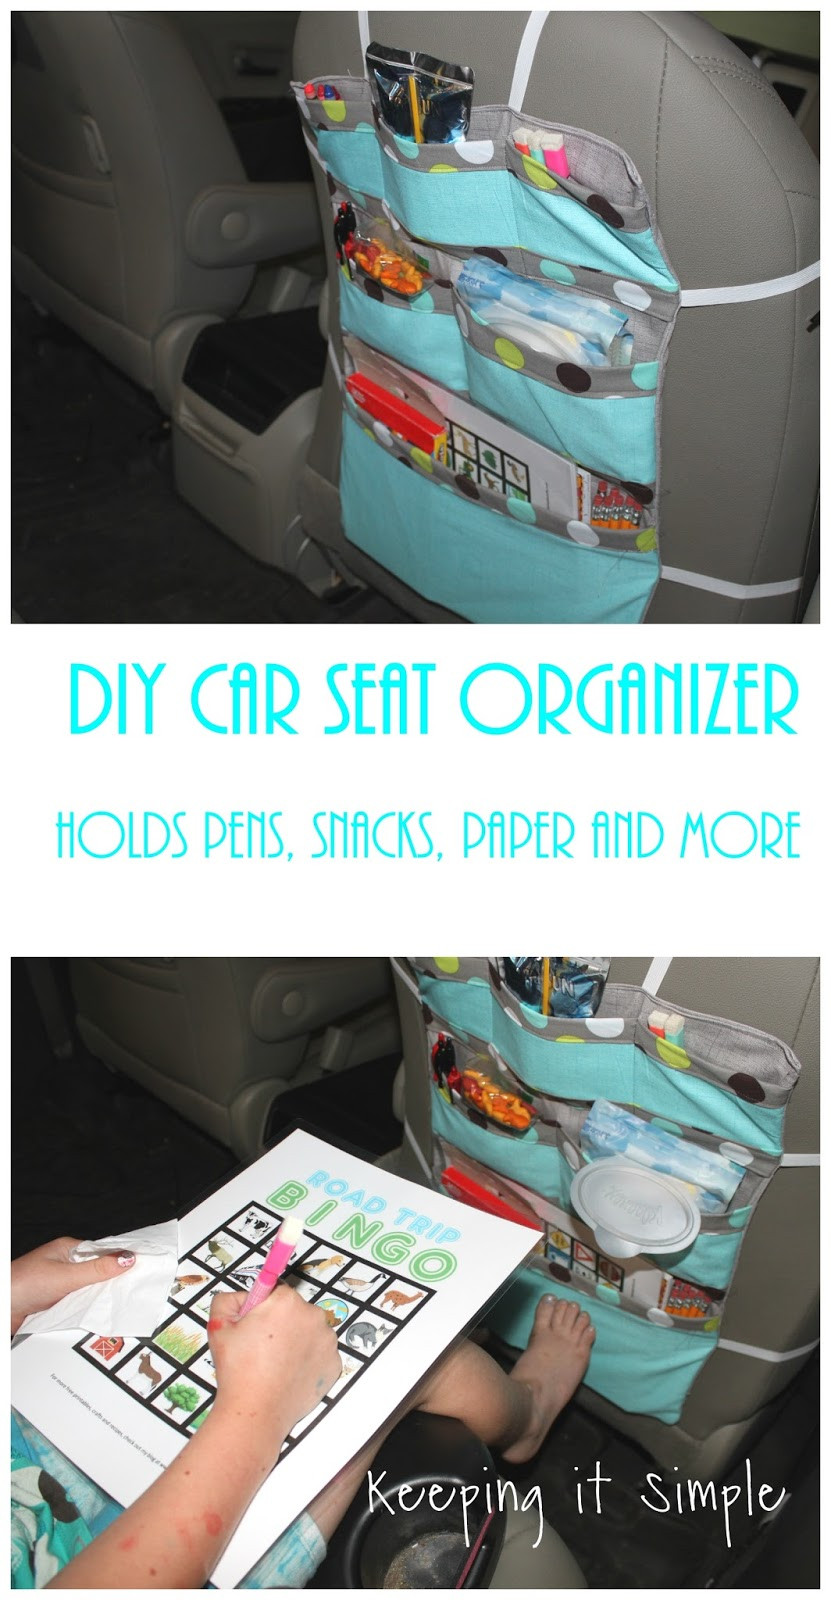 DIY Car Organizer
 Keeping it Simple DIY Car Seat Organizer Perfect for